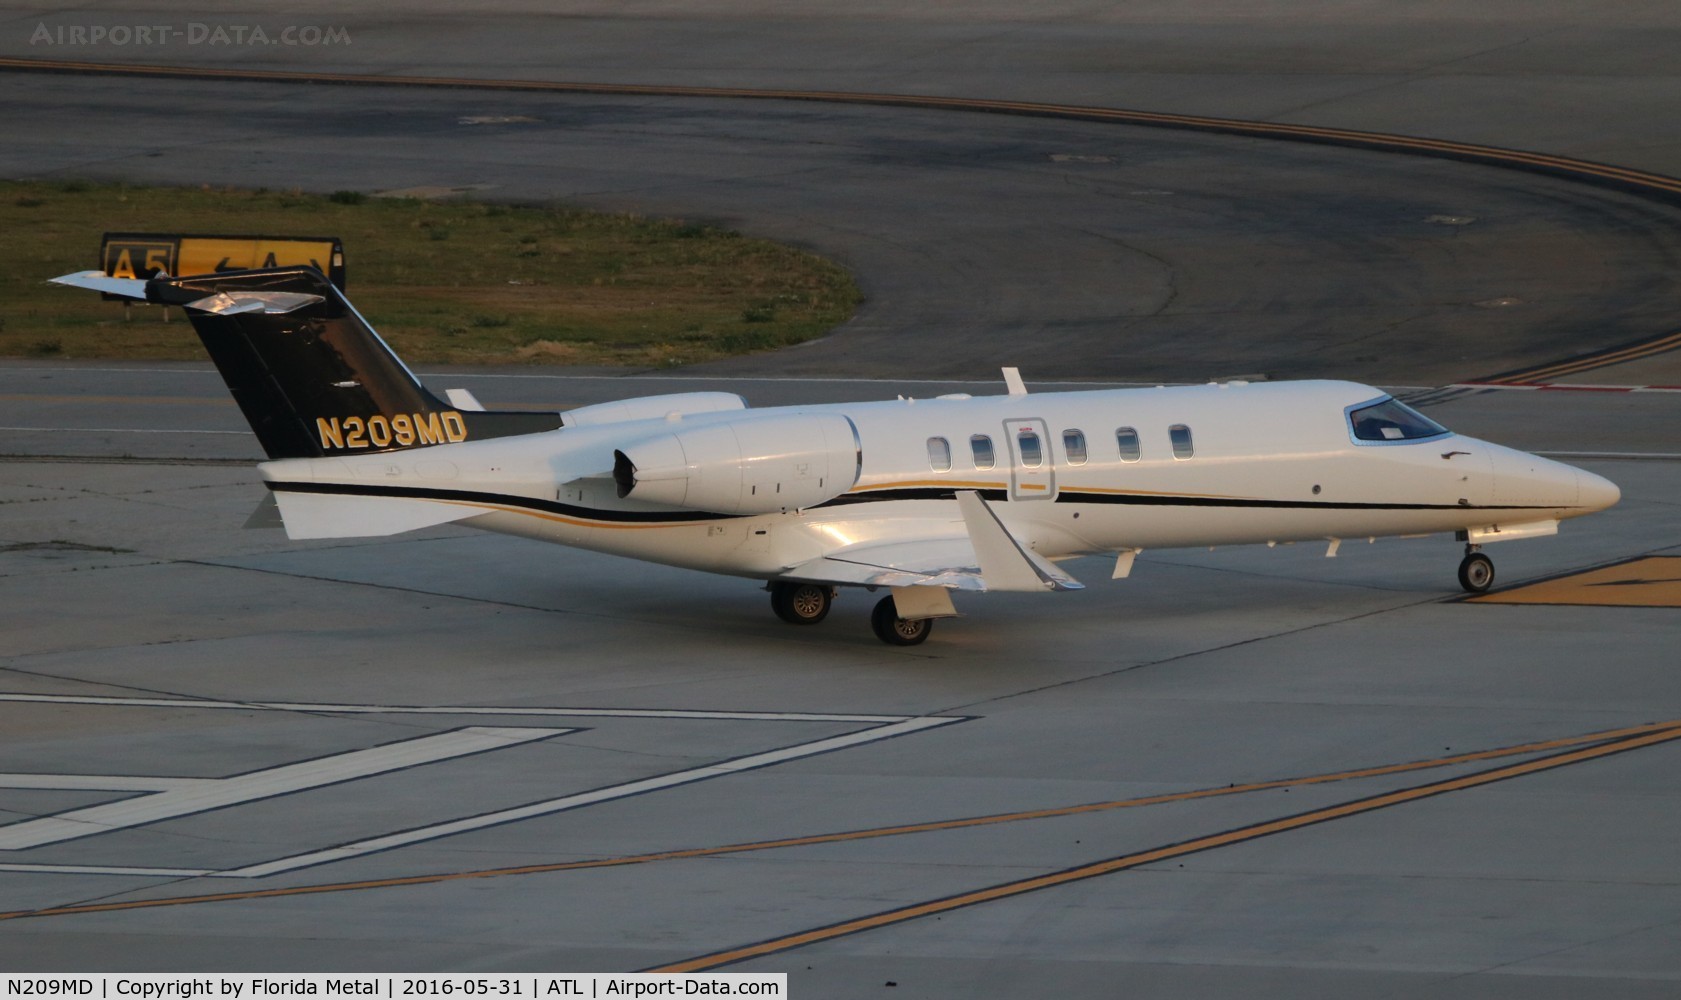 N209MD, Learjet Inc 45 C/N 2127, Lear 40